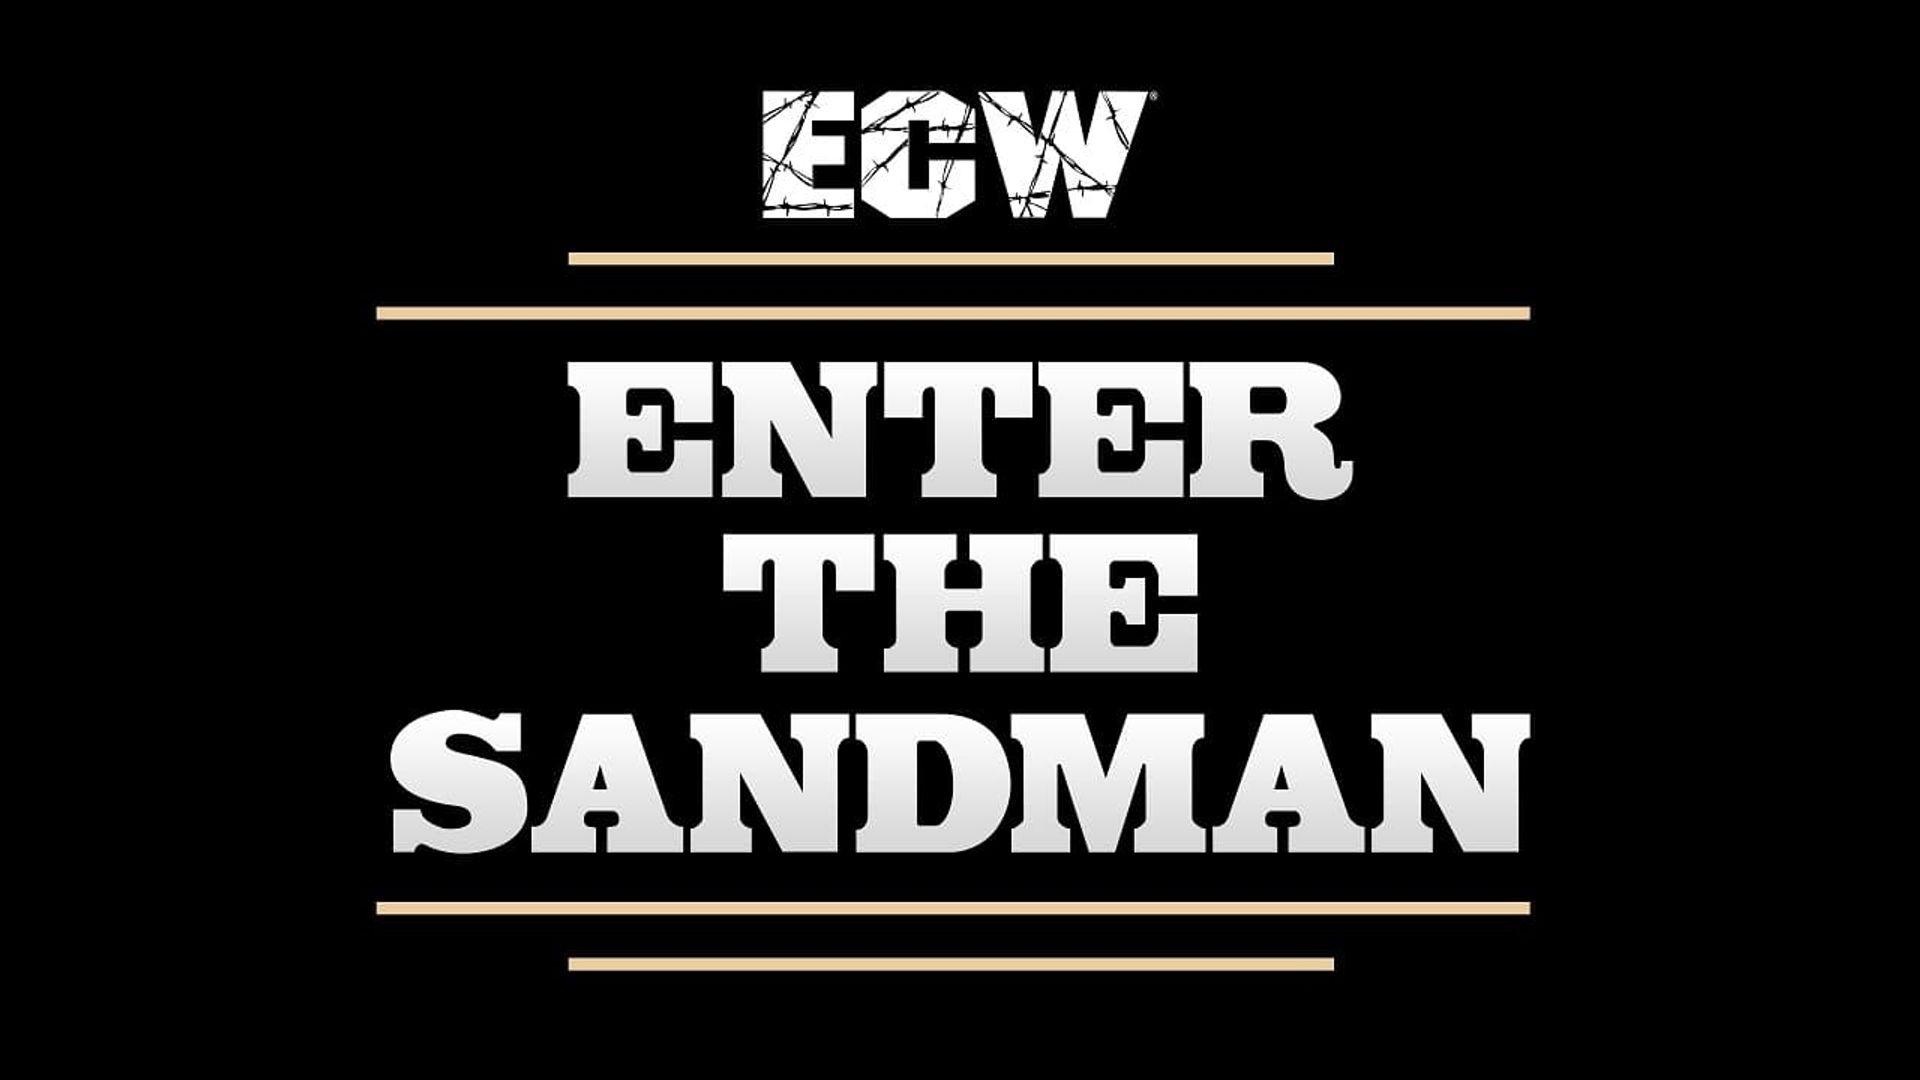 ECW Enter Sandman background